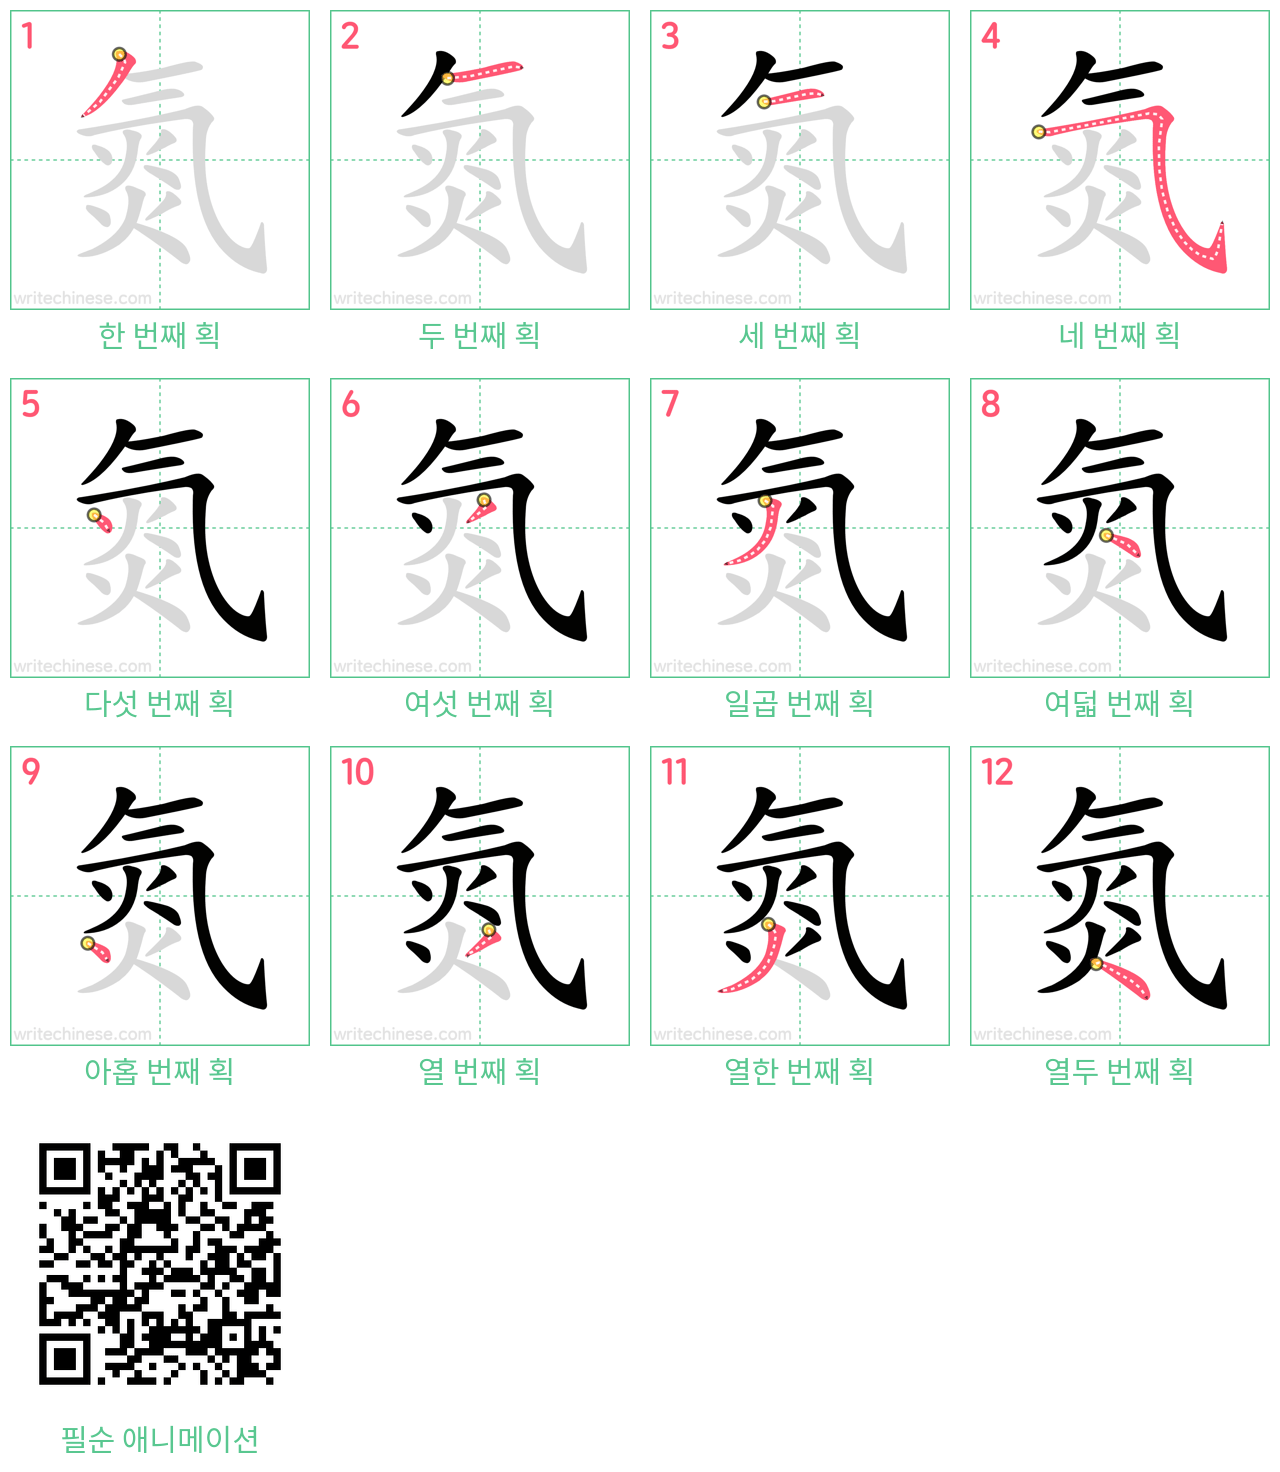 氮 step-by-step stroke order diagrams